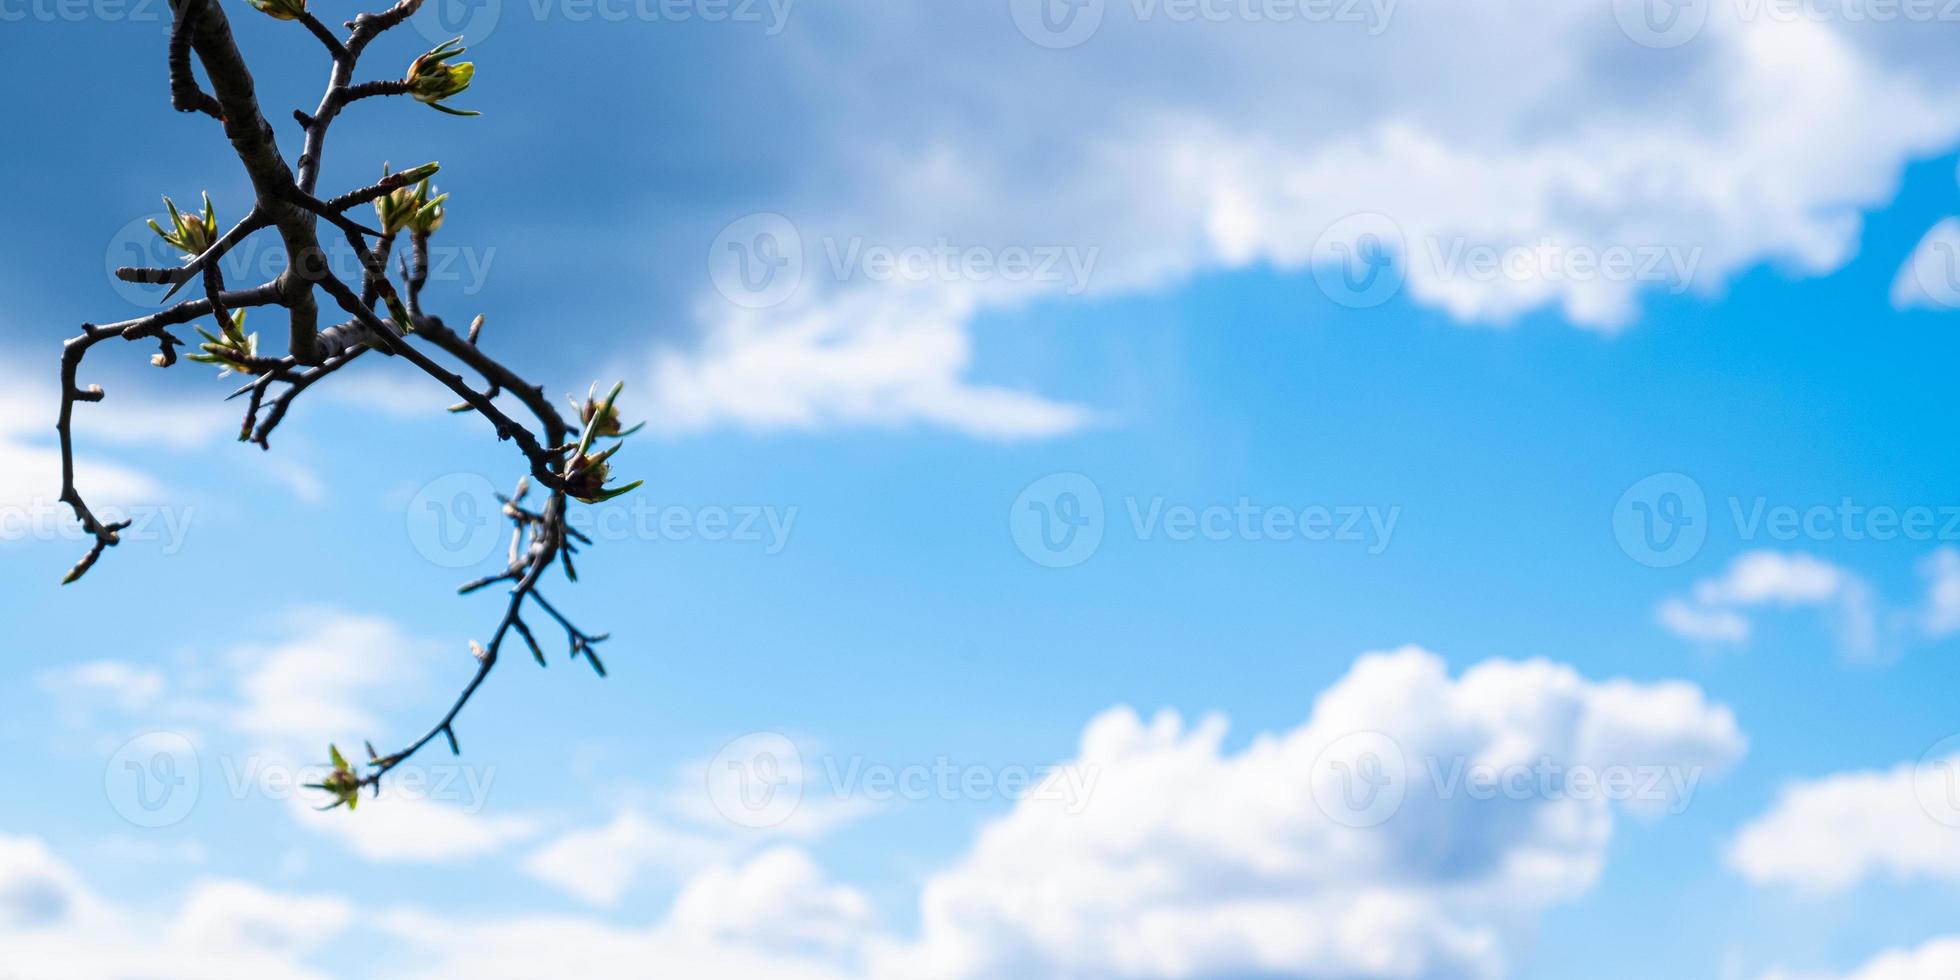 Les feuilles de printemps qui fleurissent sur une branche contre un ciel bleu avec des nuages blancs et copiez l'espace photo